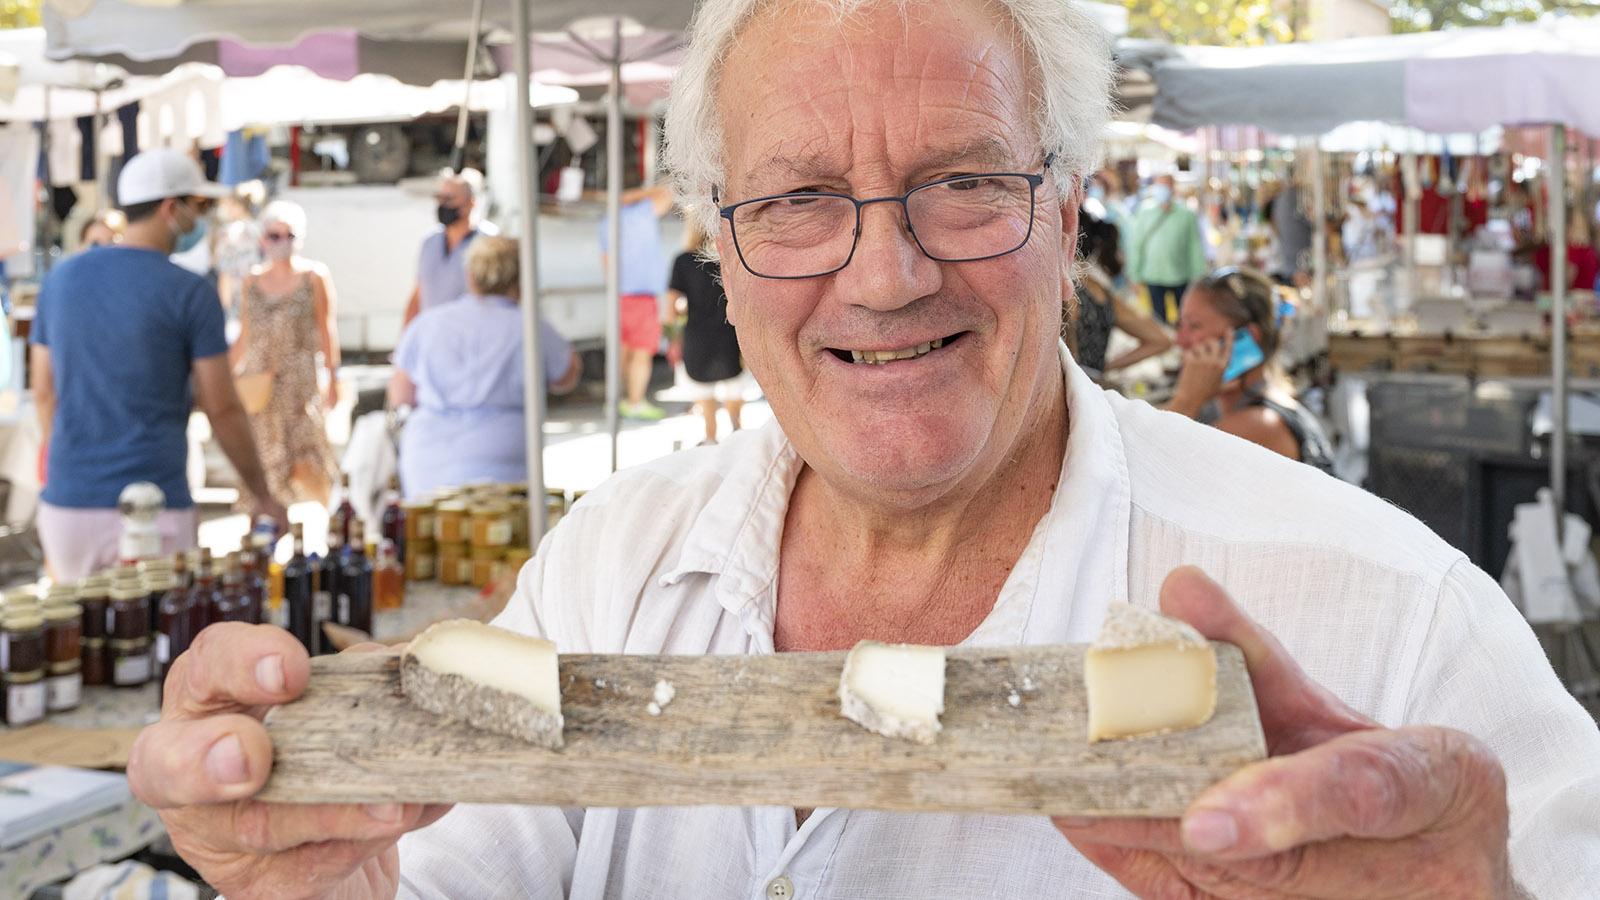 Loïc de Saleneuve verkauft auf dem Markt von Saint-Tropez seine hausgemachten Ziegenkäse. Foto: Hilke Maunder